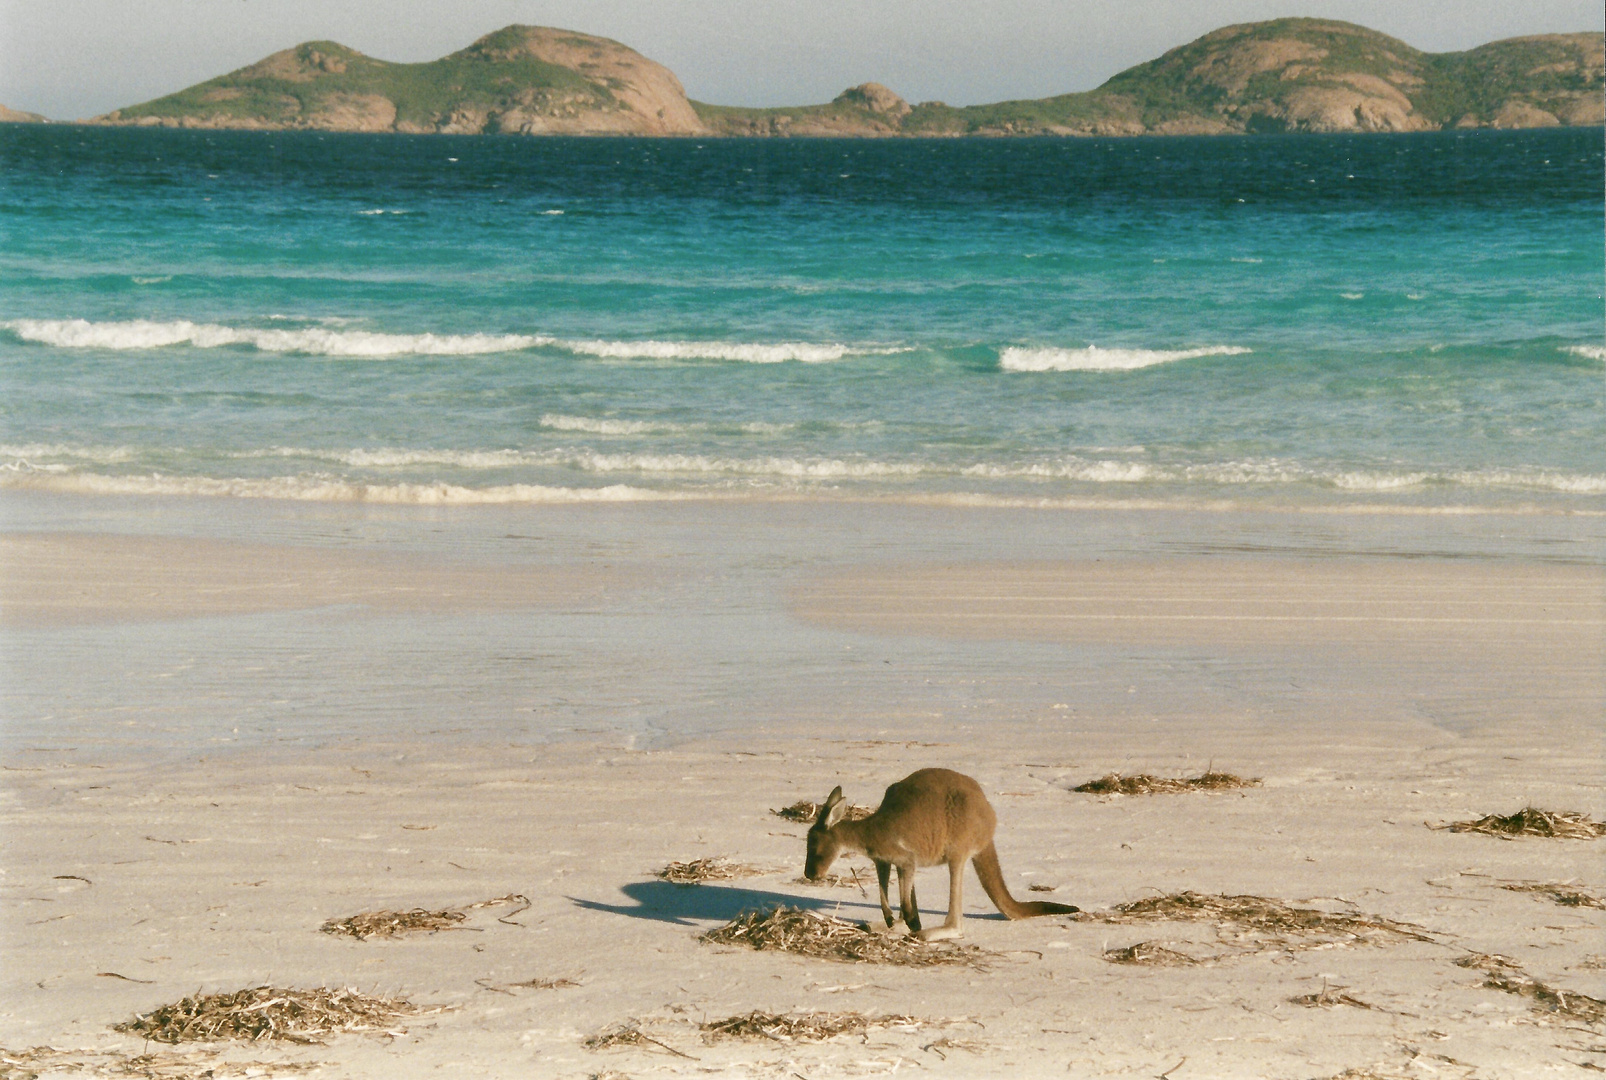 Australien (2001), Cape Le Grand NP